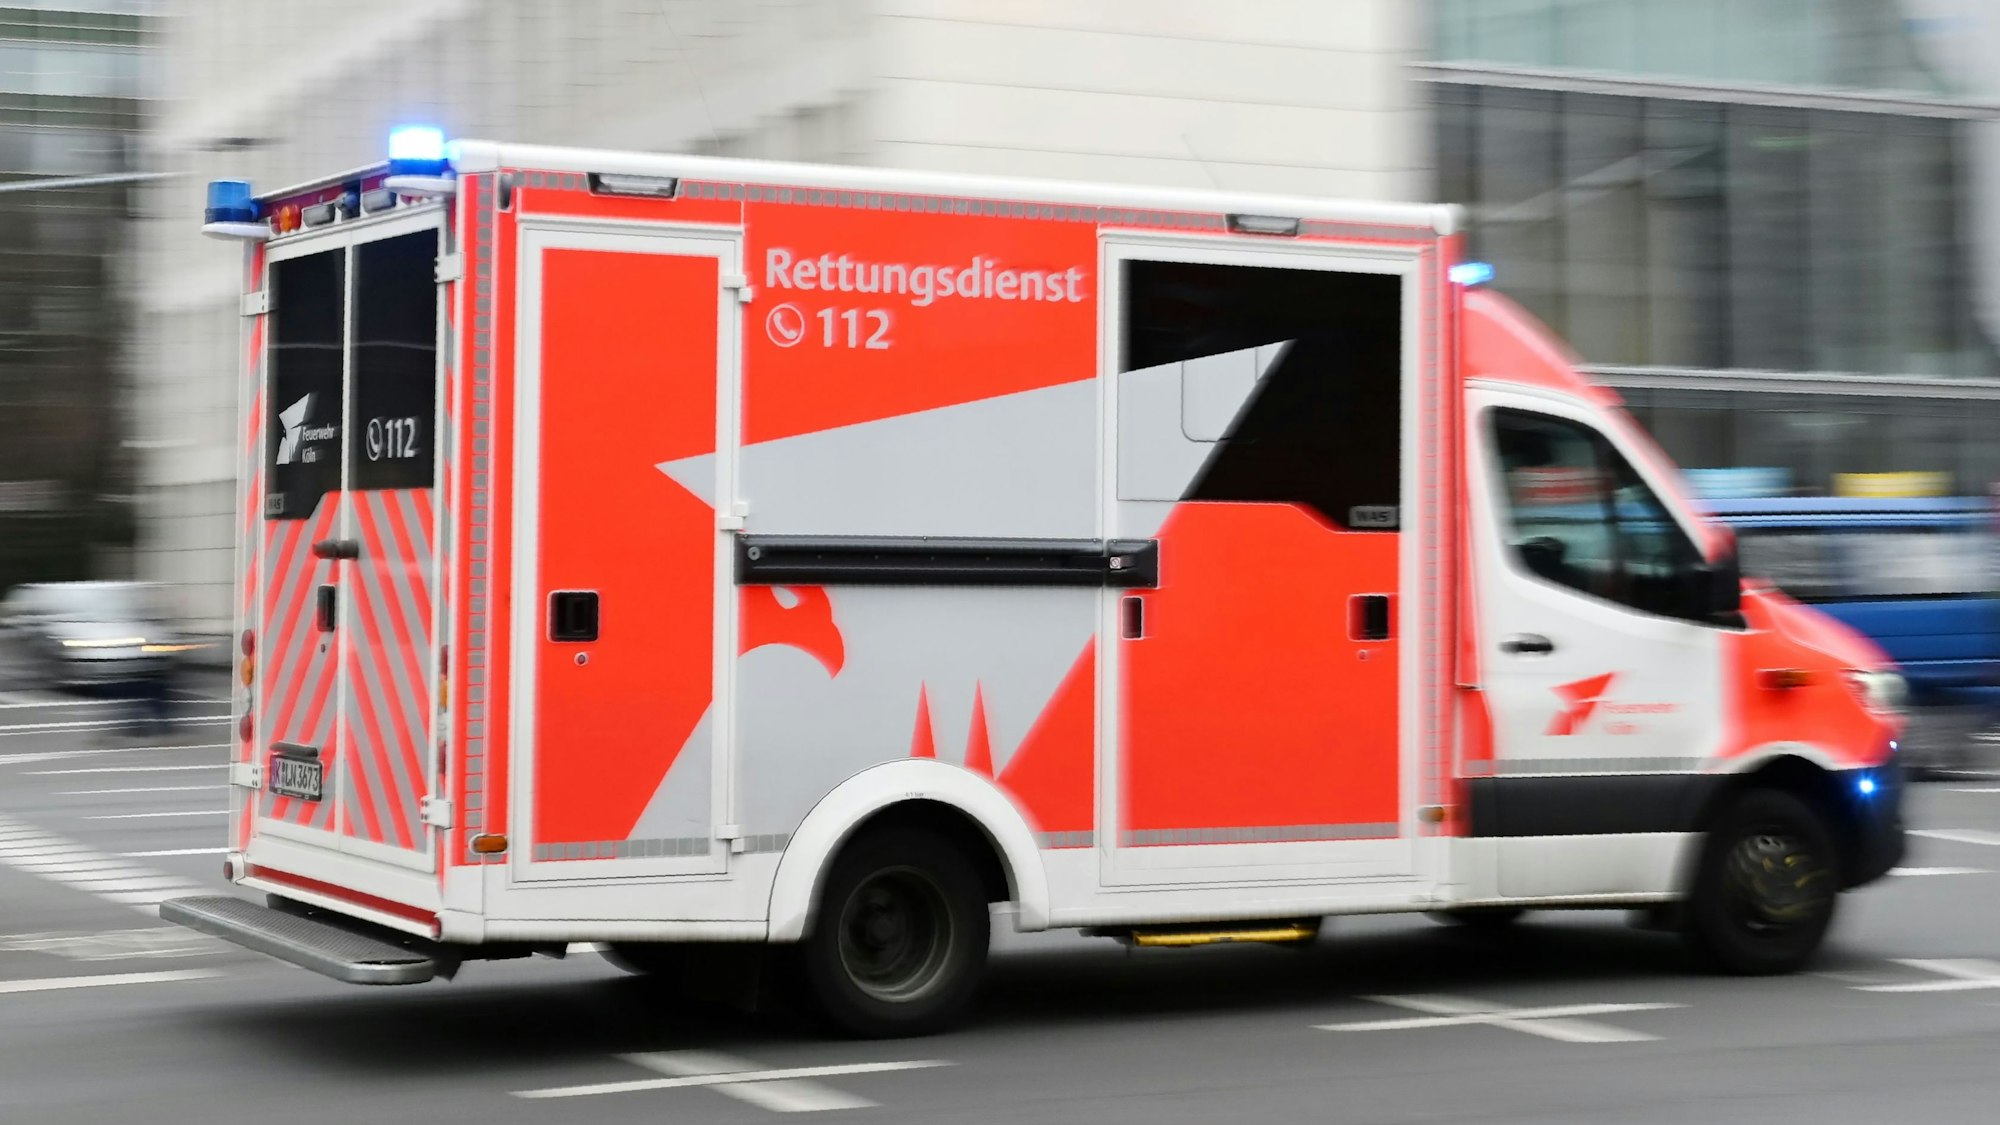 Zu sehen ist ein Einsatzfahrzeug des Kölner Rettungsdienstes im Einsatz in der Seitenansicht.